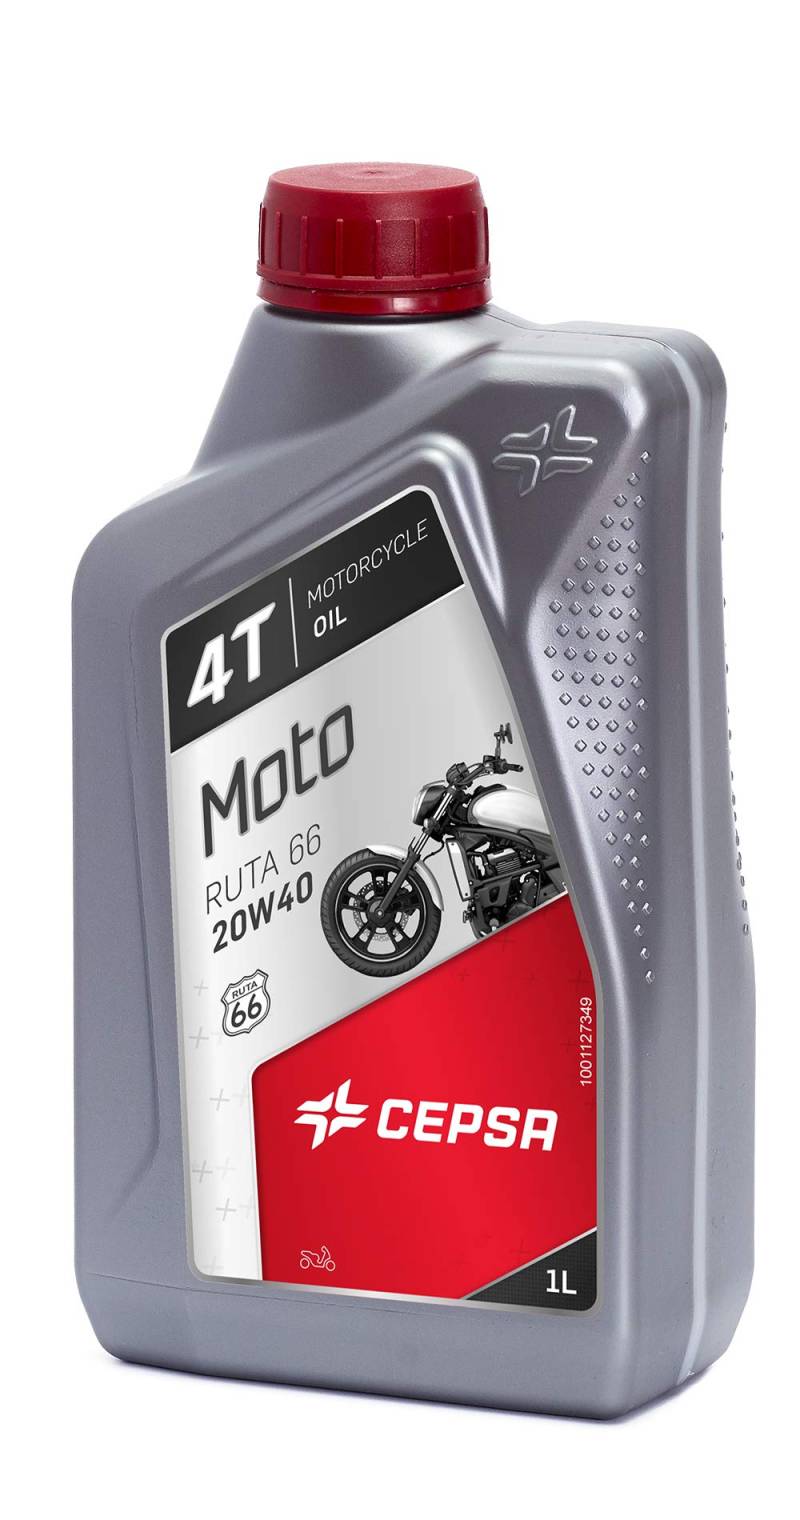 CEPSA 514244187 Moto 4T Ruta 66 20W40 Mineralöl Mehrbereichs-Schmierstoff für Viertakt-Motorräder, 1 L von CEPSA